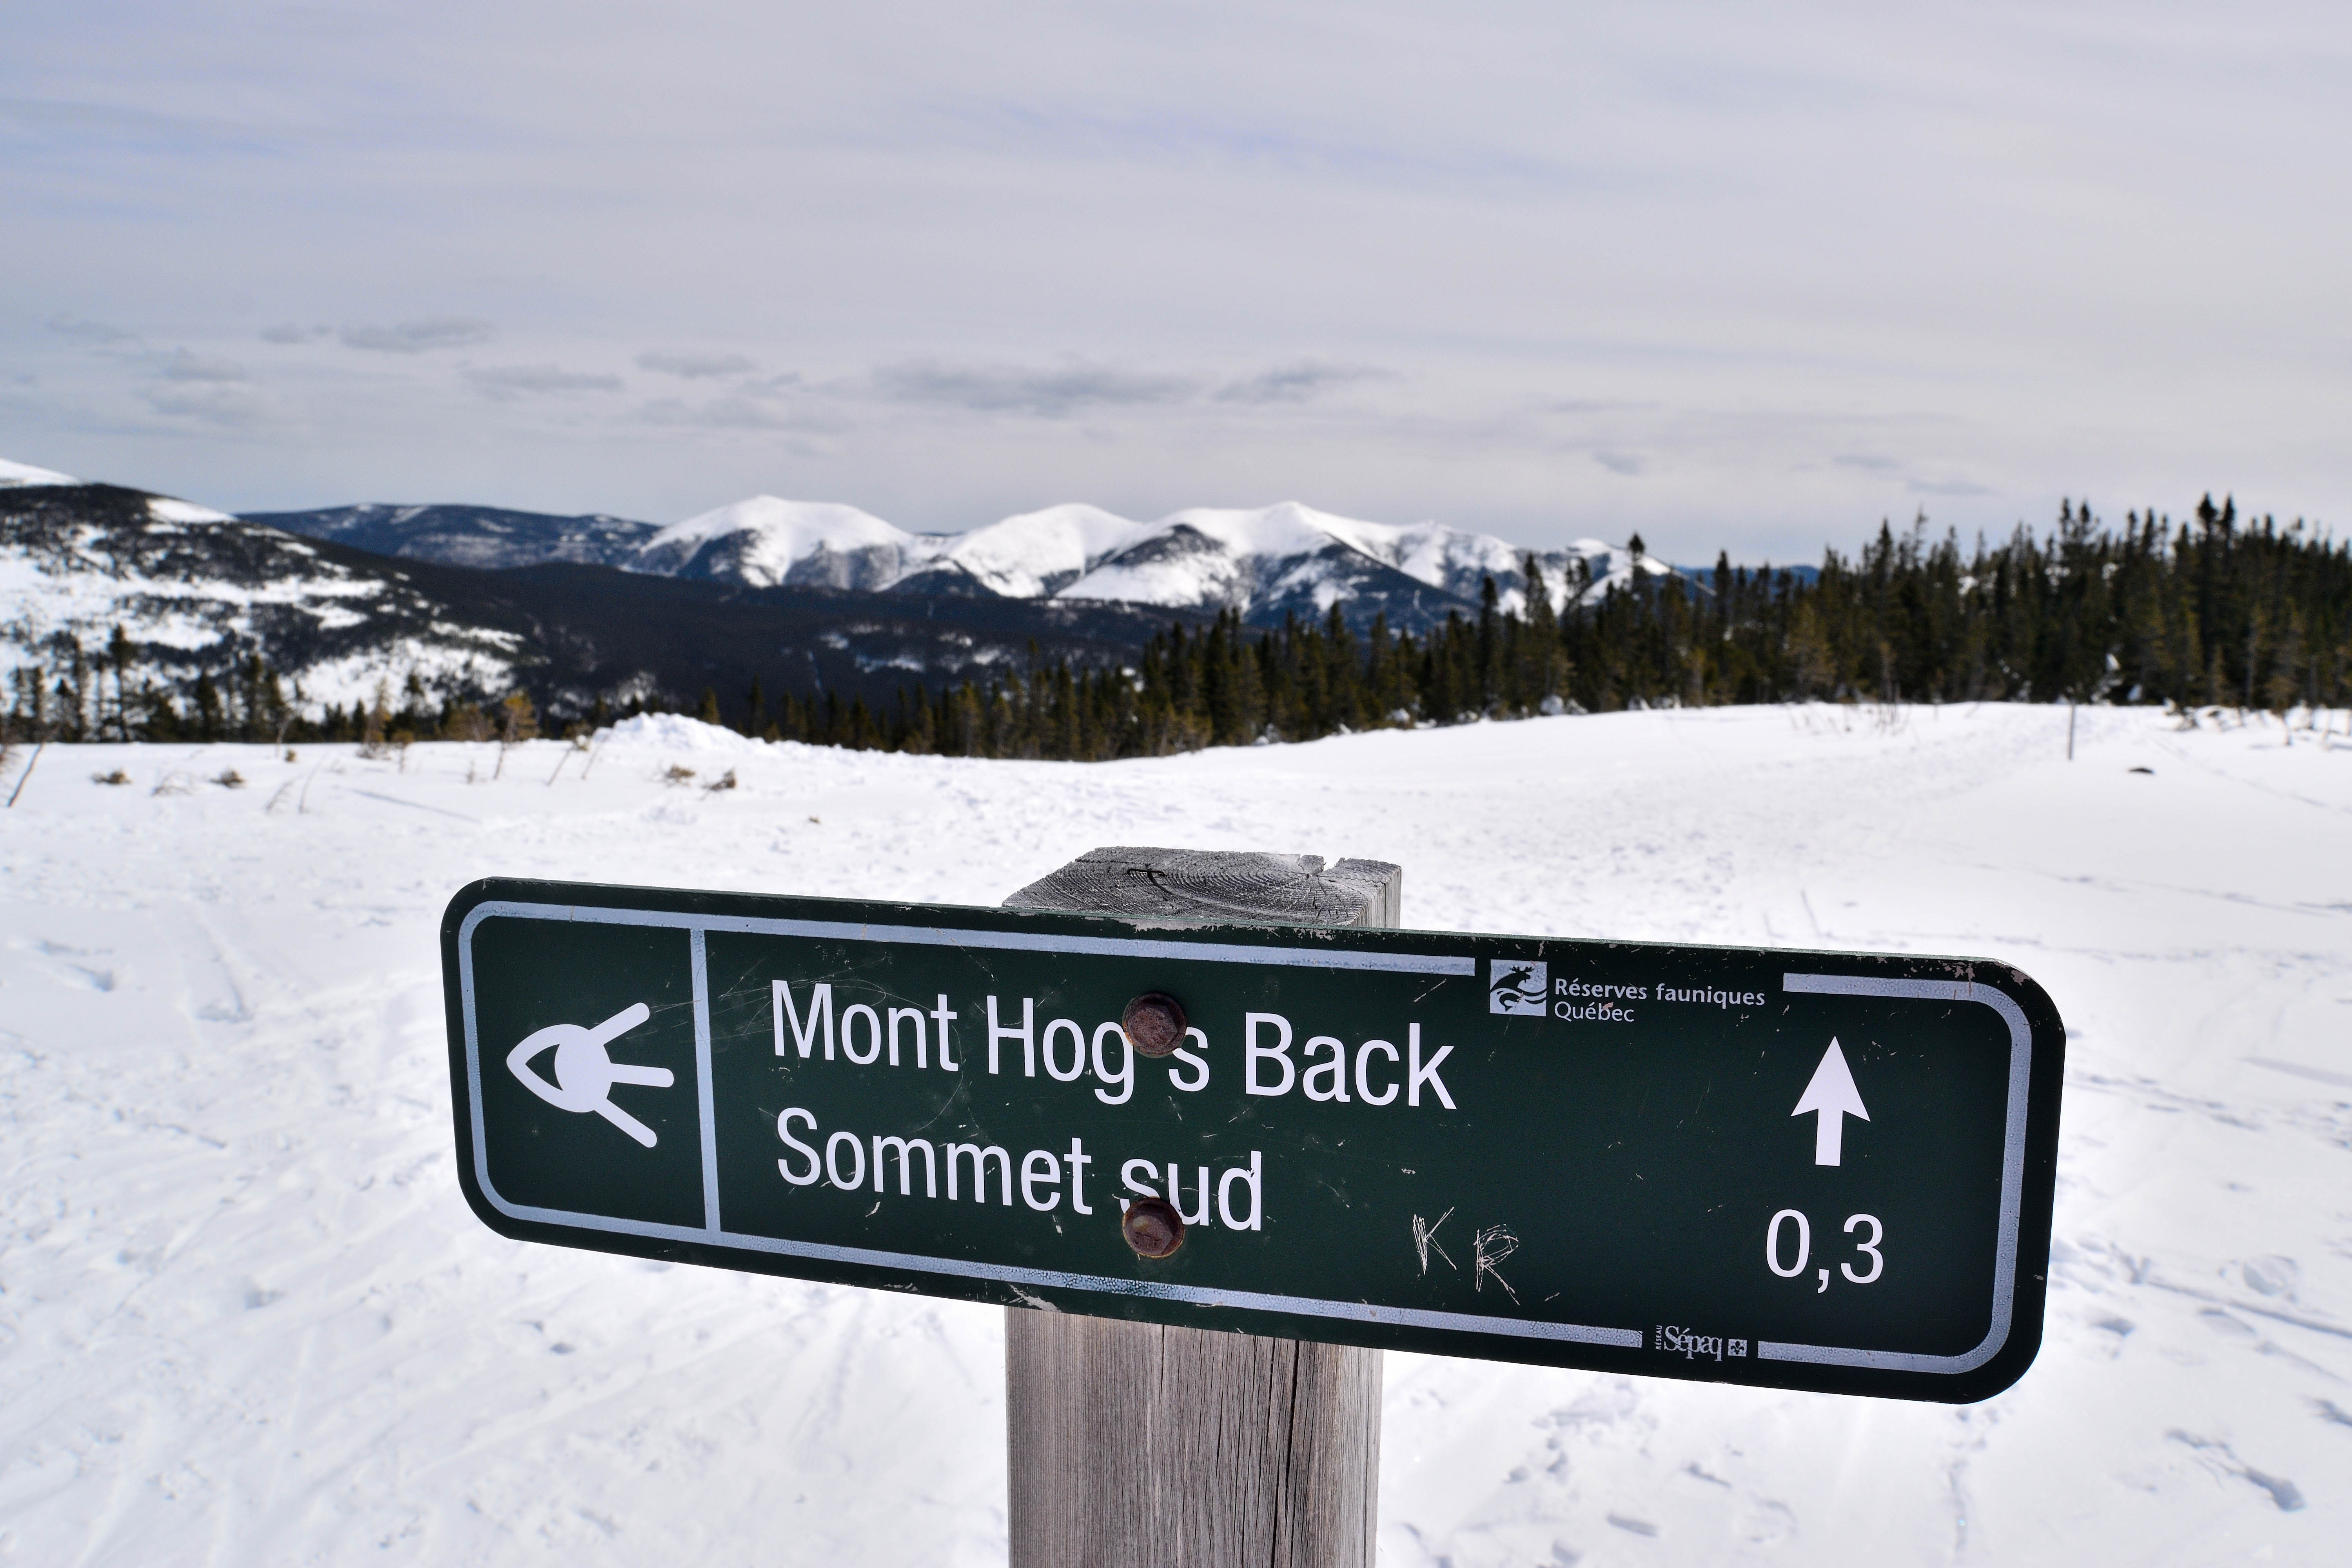 Sommet du Mont Hog's Back